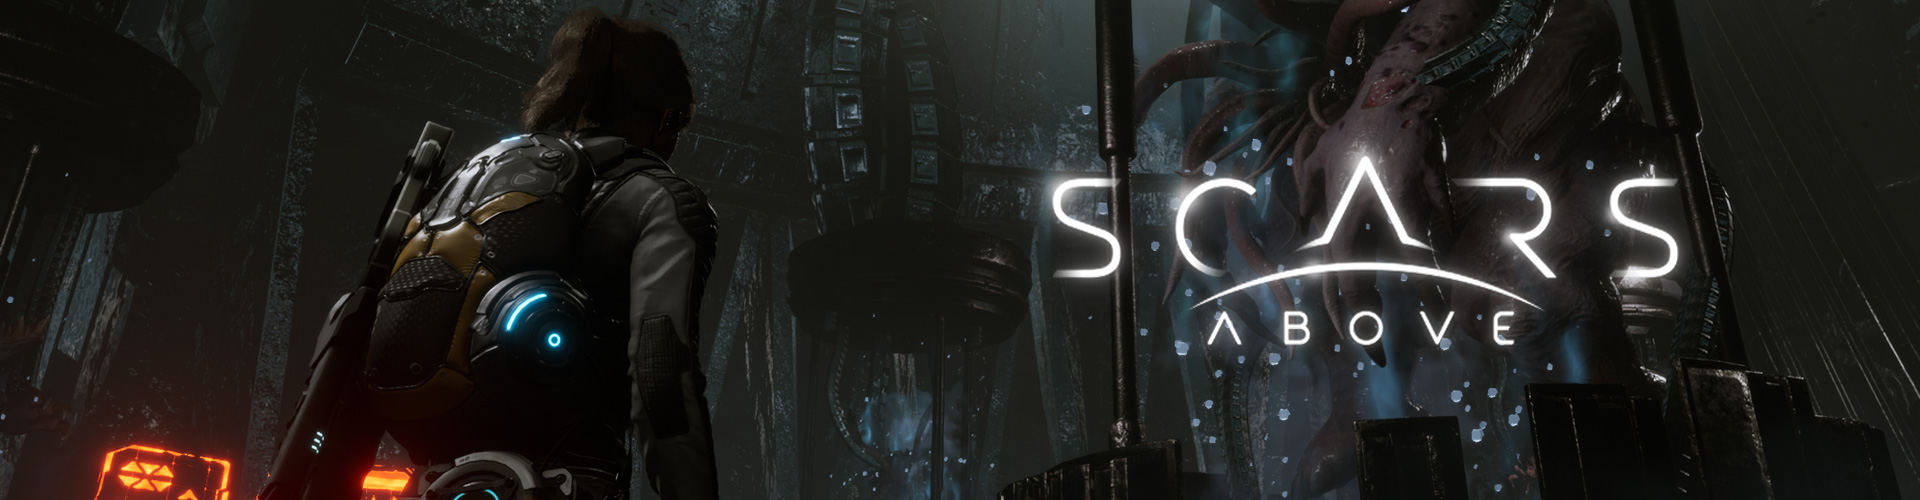 Scars Above Ã¨ un gioco horror di fantascienza